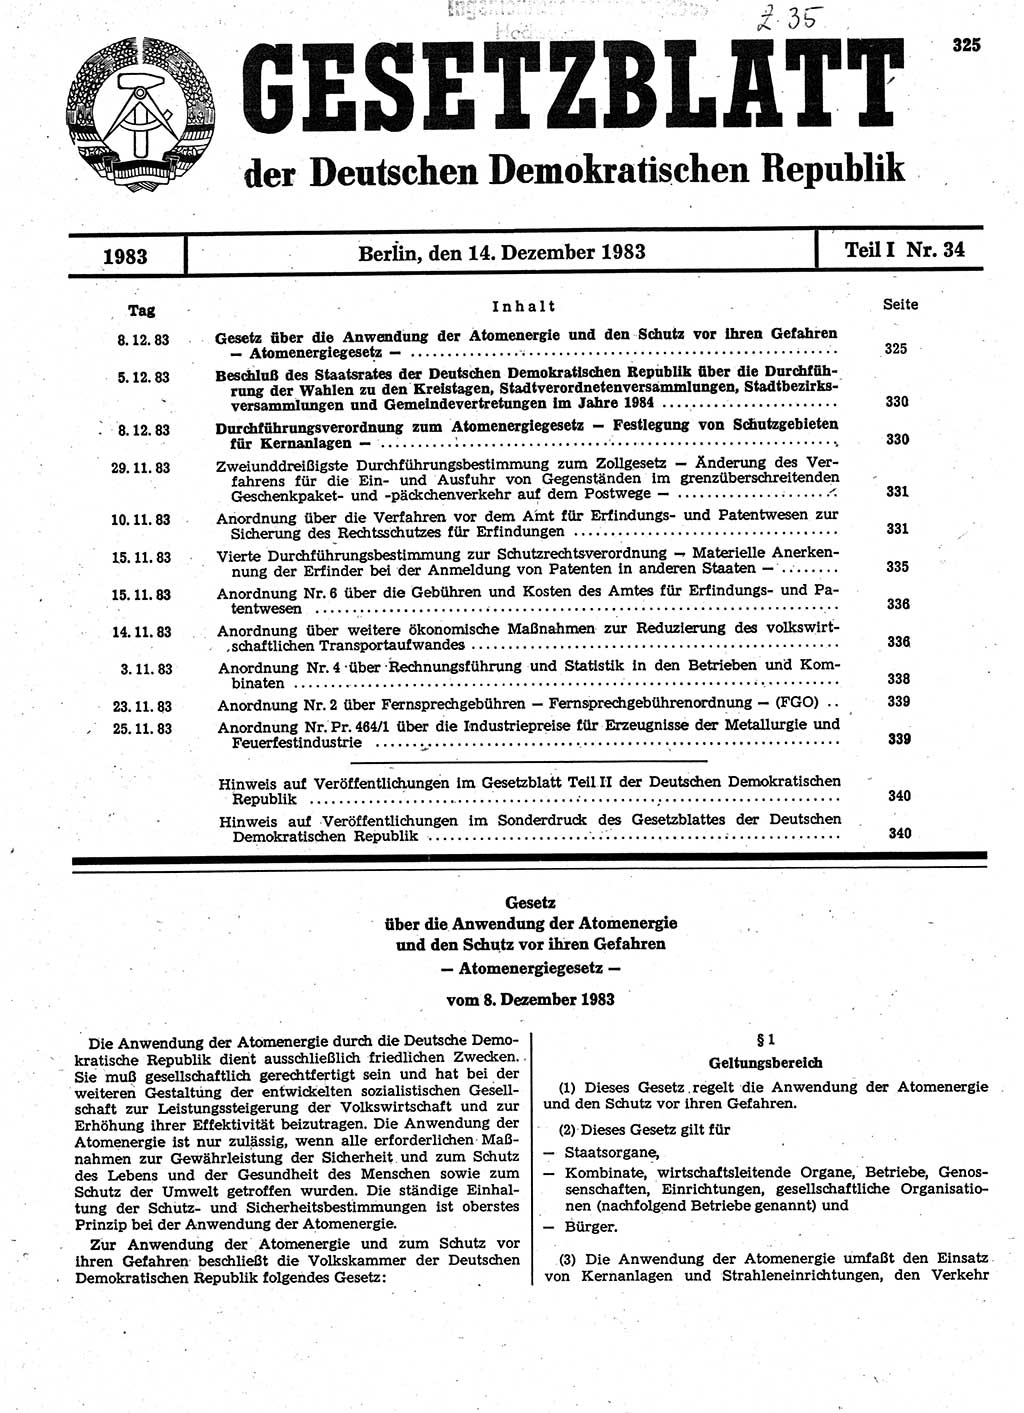 Gesetzblatt (GBl.) der Deutschen Demokratischen Republik (DDR) Teil Ⅰ 1983, Seite 325 (GBl. DDR Ⅰ 1983, S. 325)